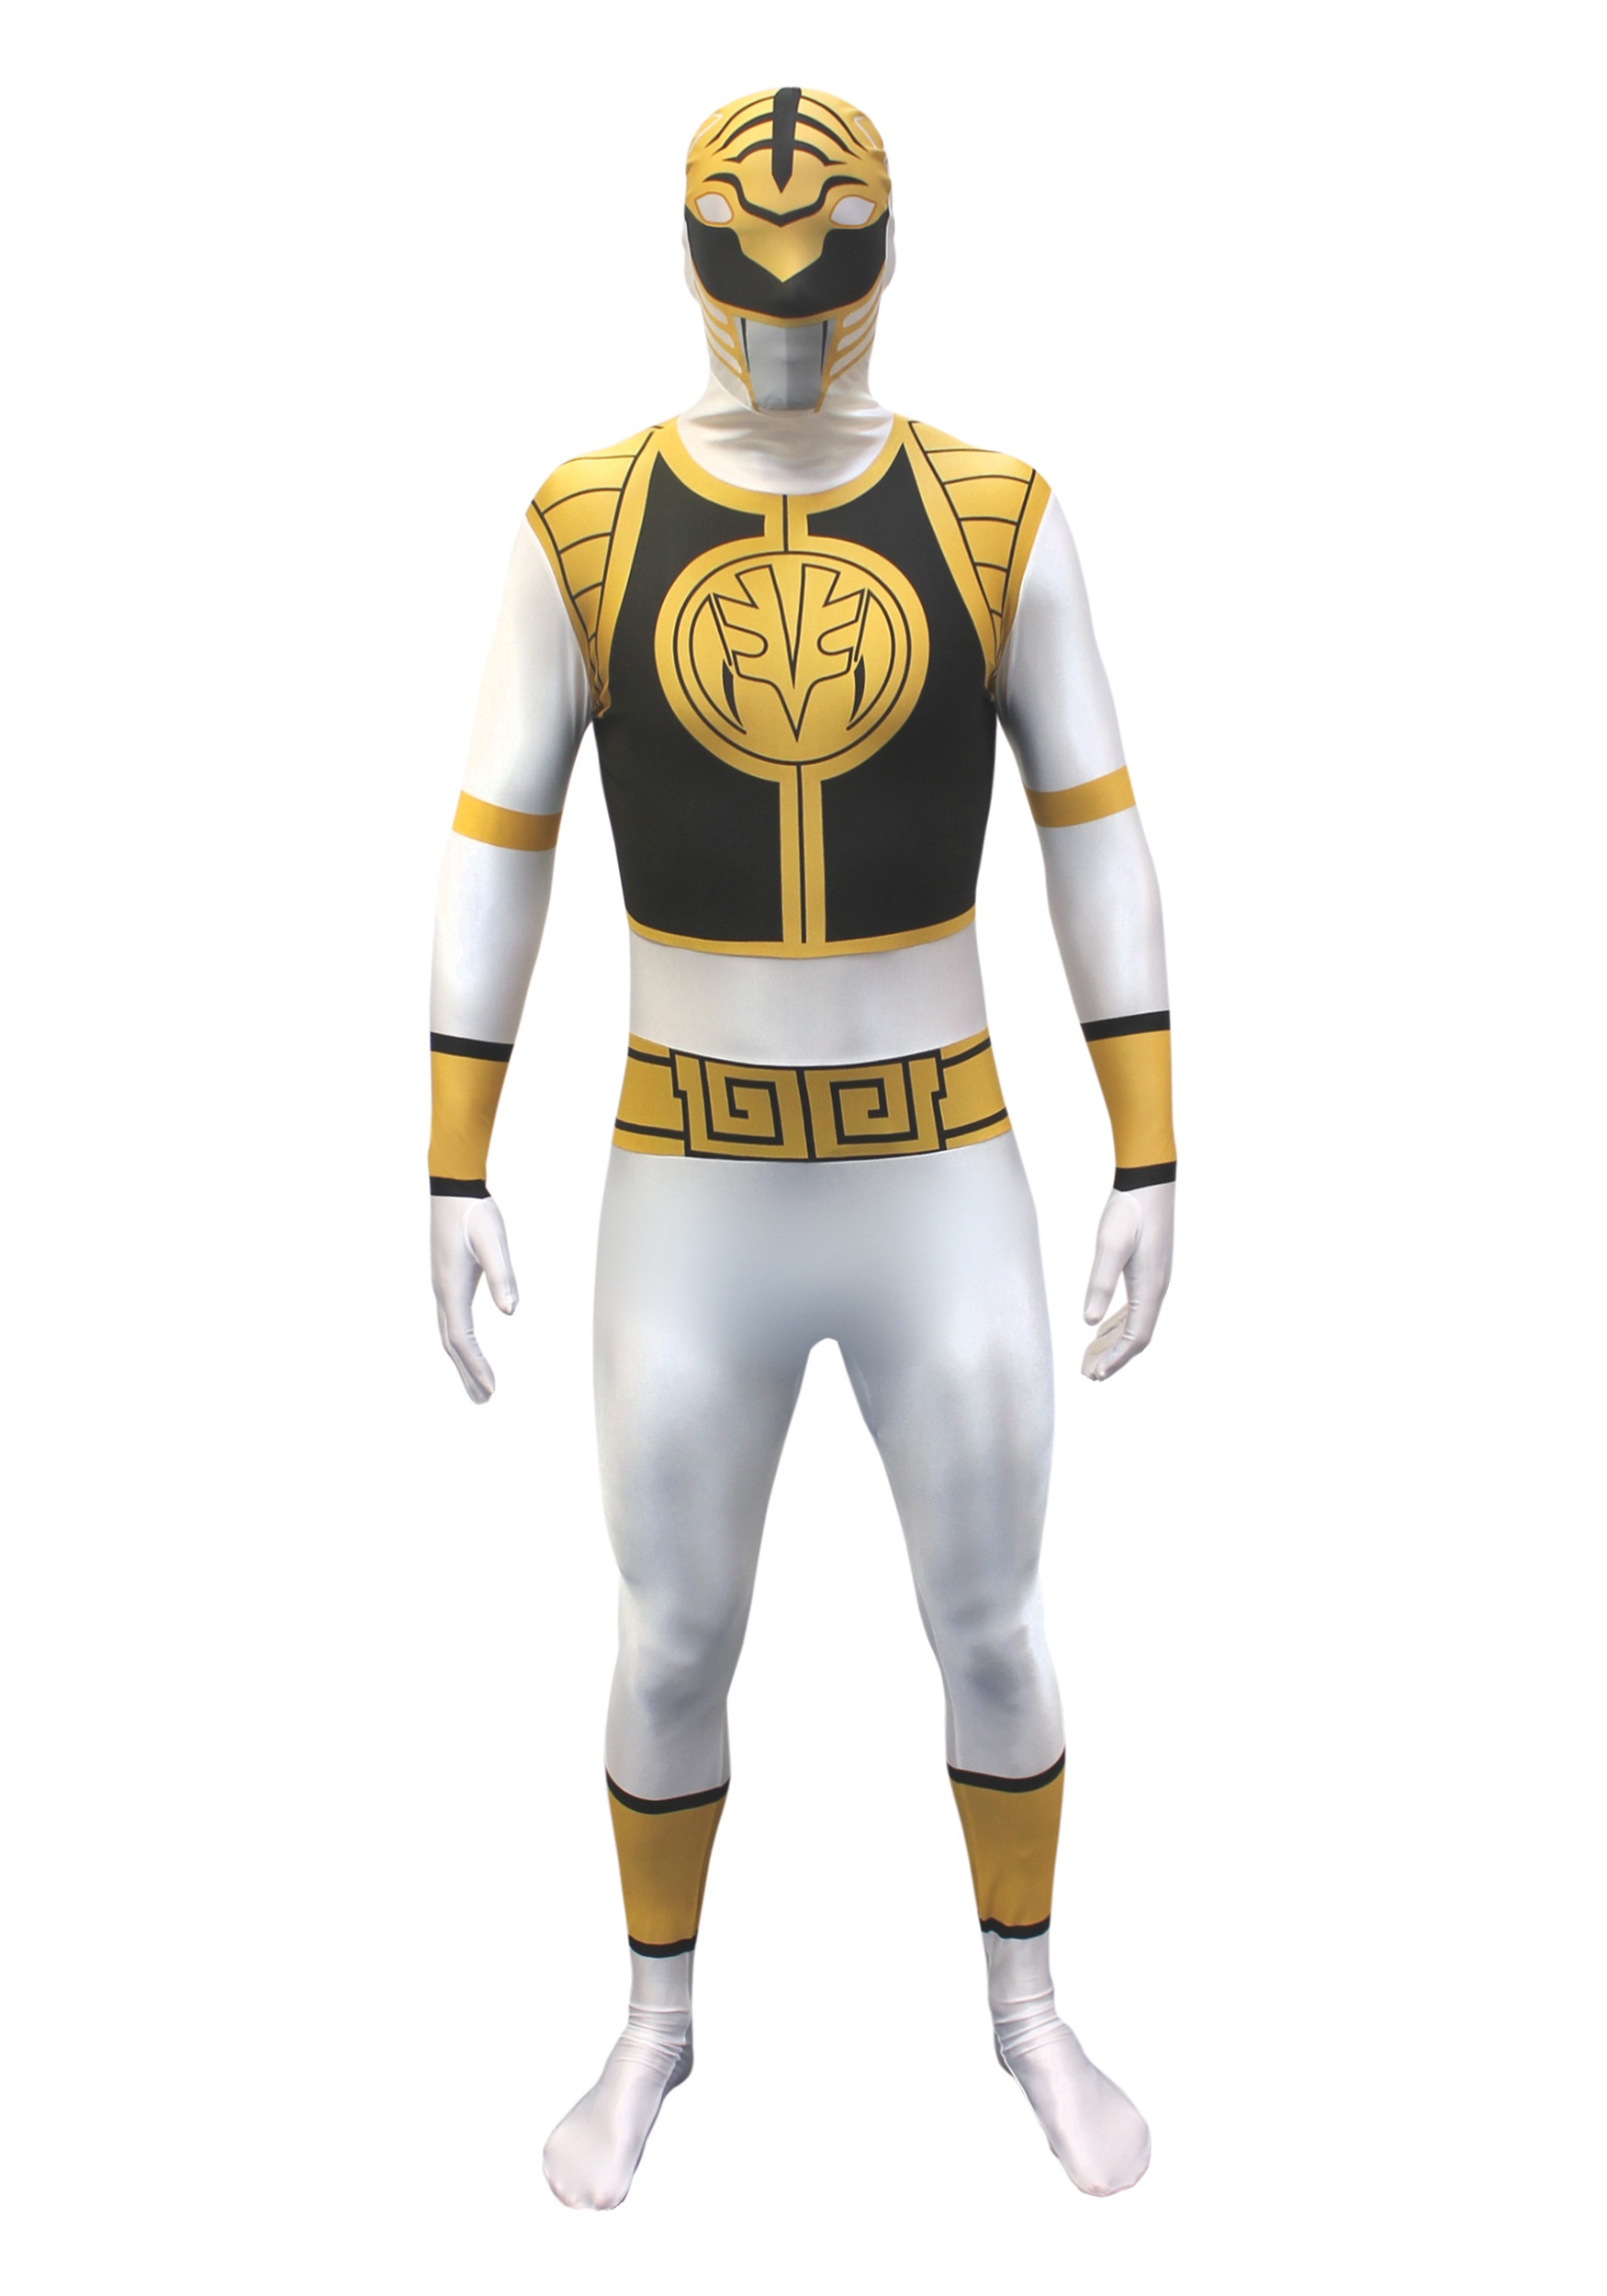 Power Rangers: White Ranger Morphsuit Costume